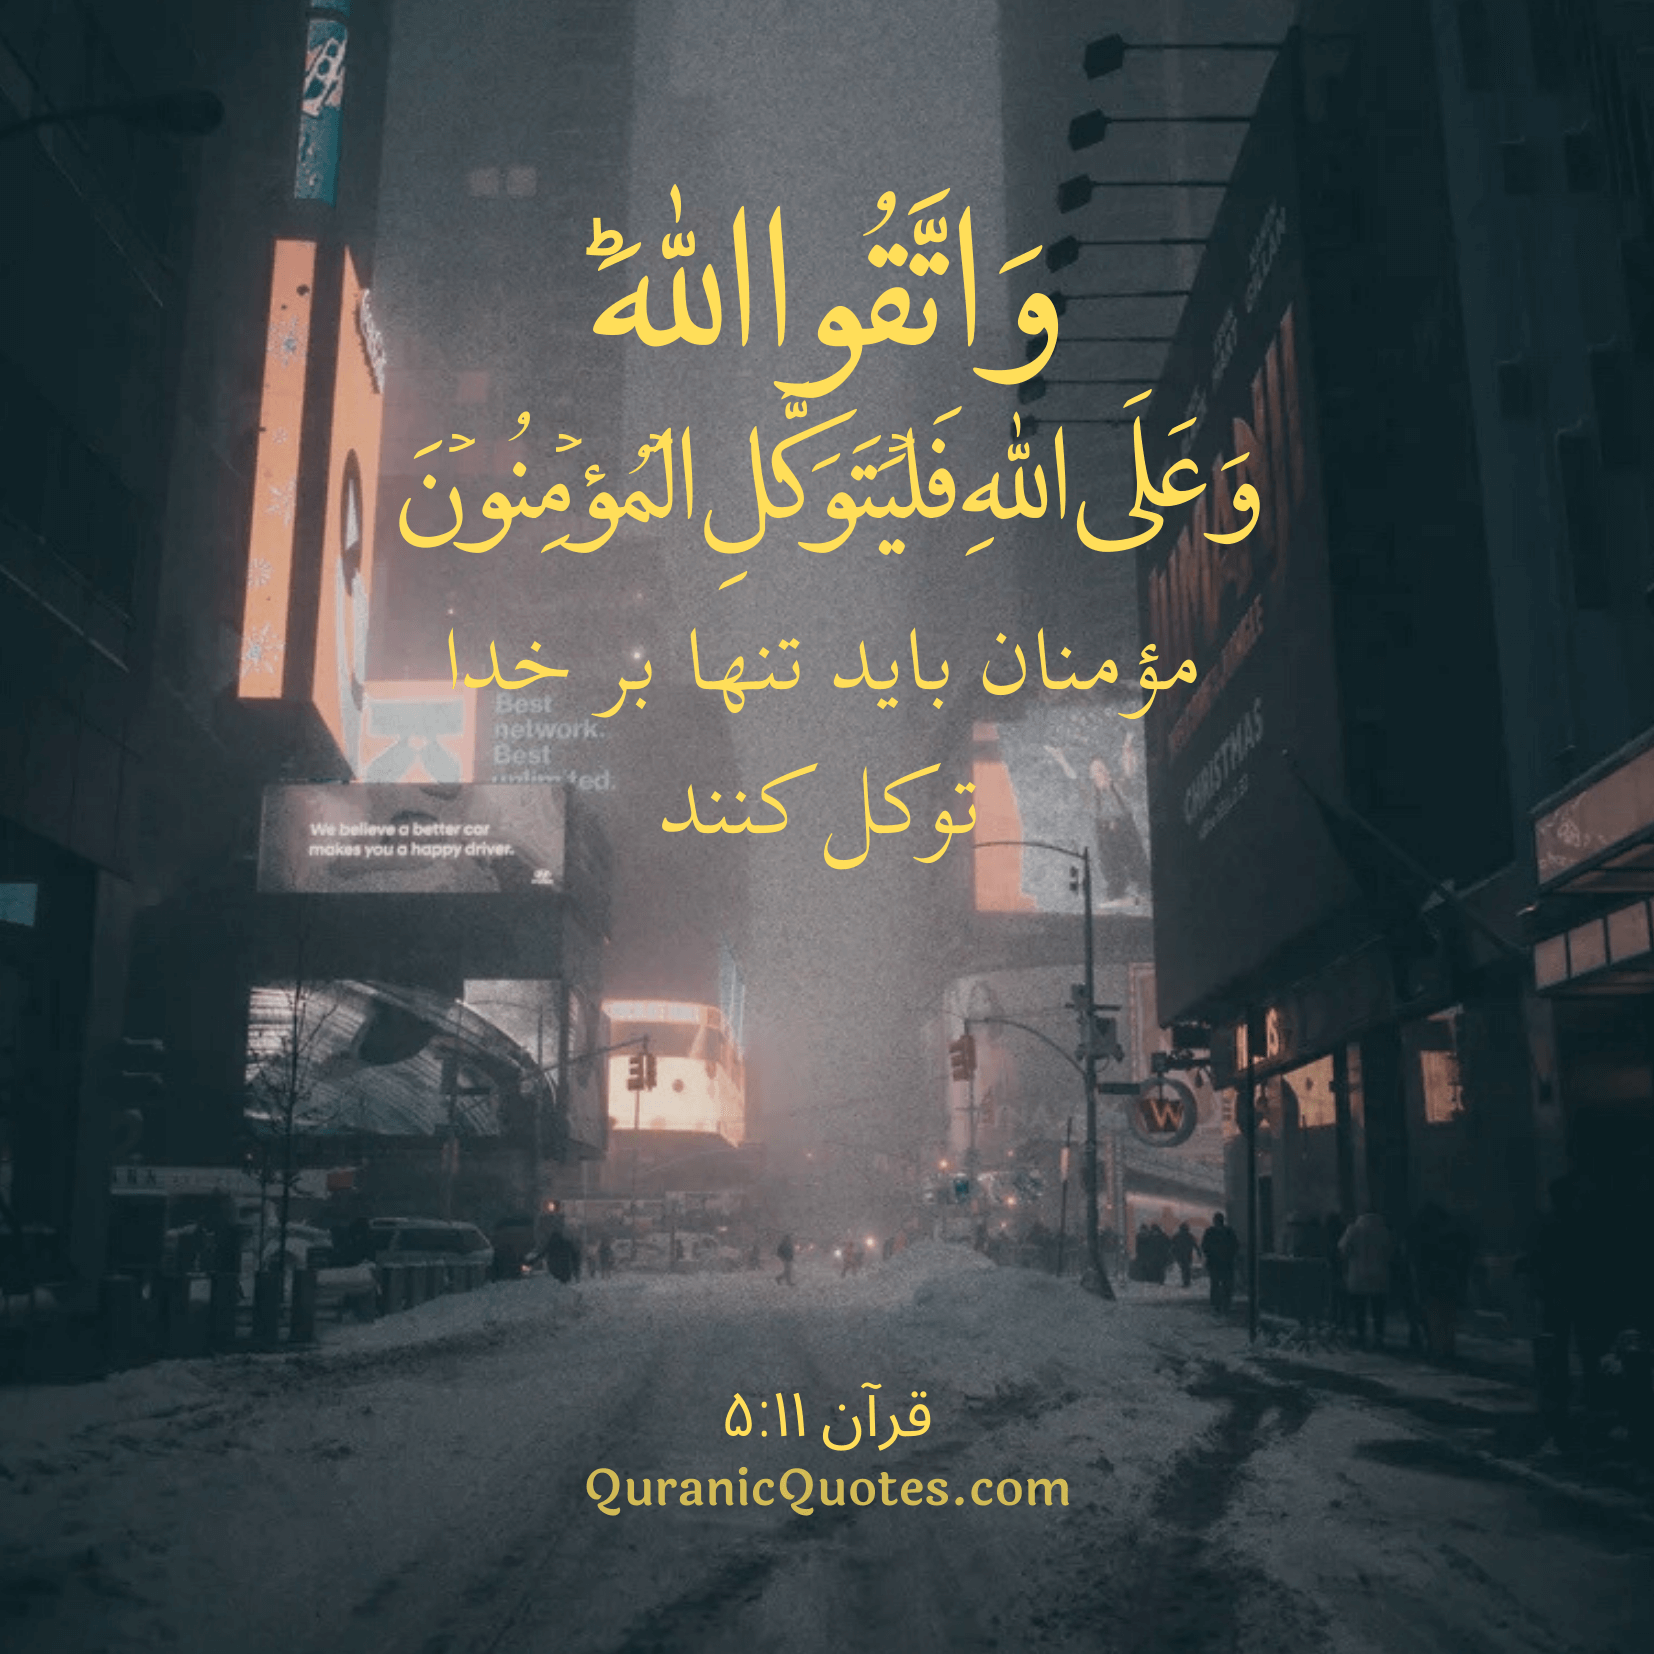 Quranic Quotes in Farsi 05:11